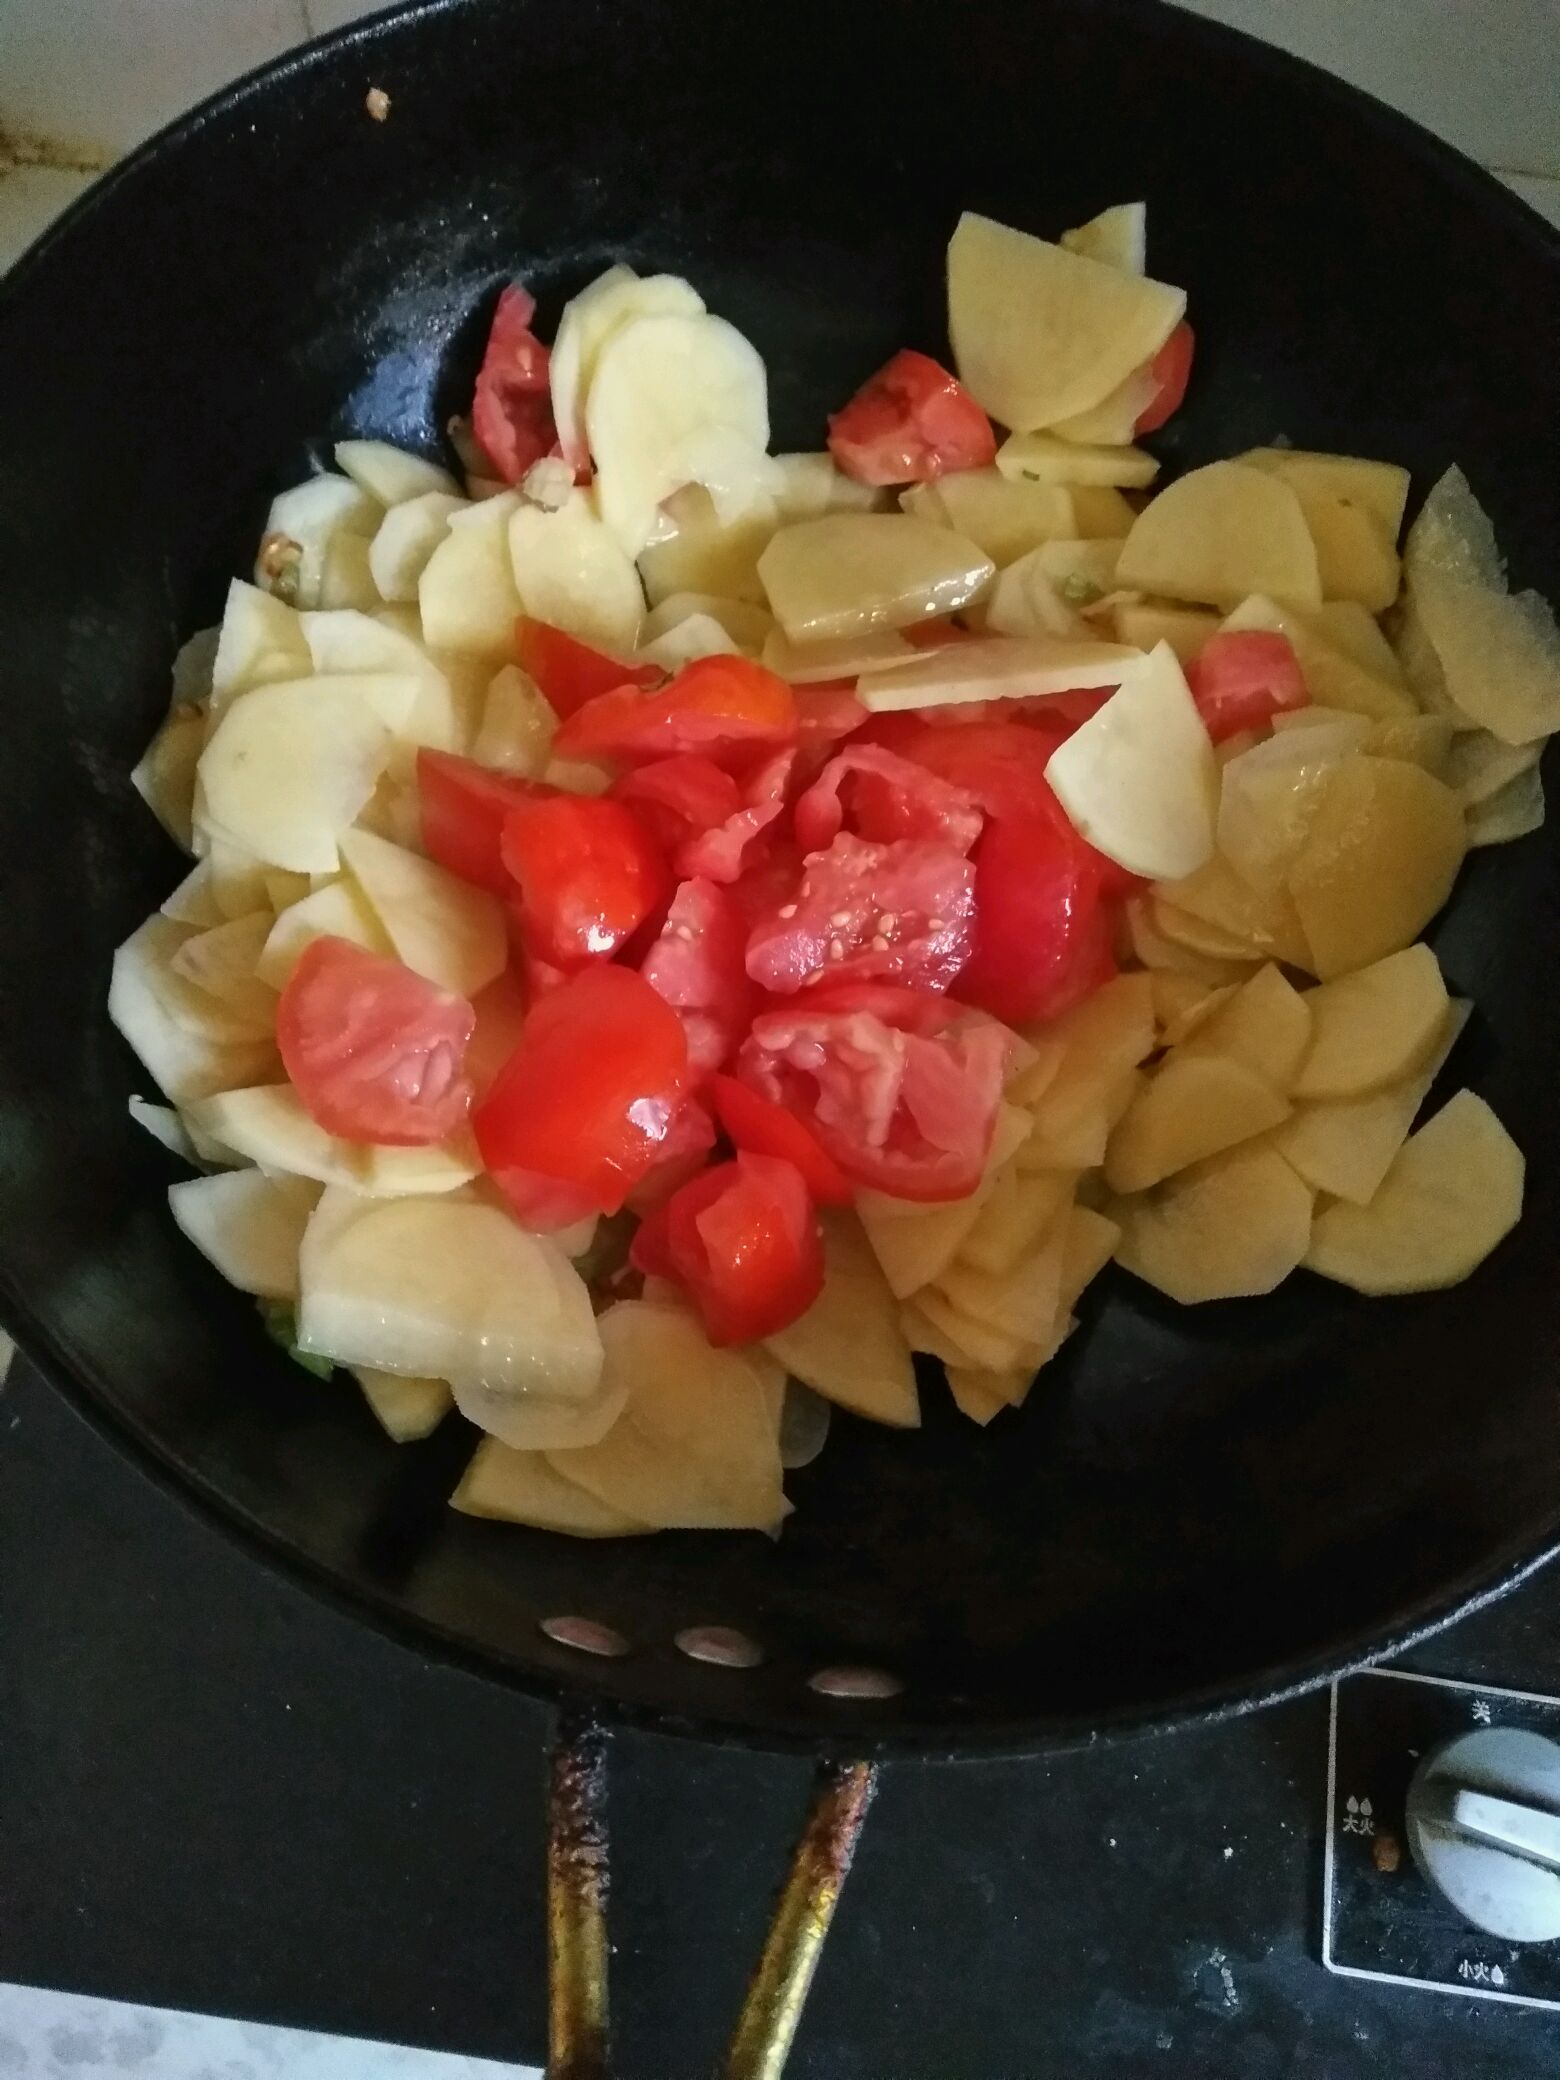 西红柿炒土豆片,西红柿炒土豆片的家常做法 - 美食杰西红柿炒土豆片做法大全